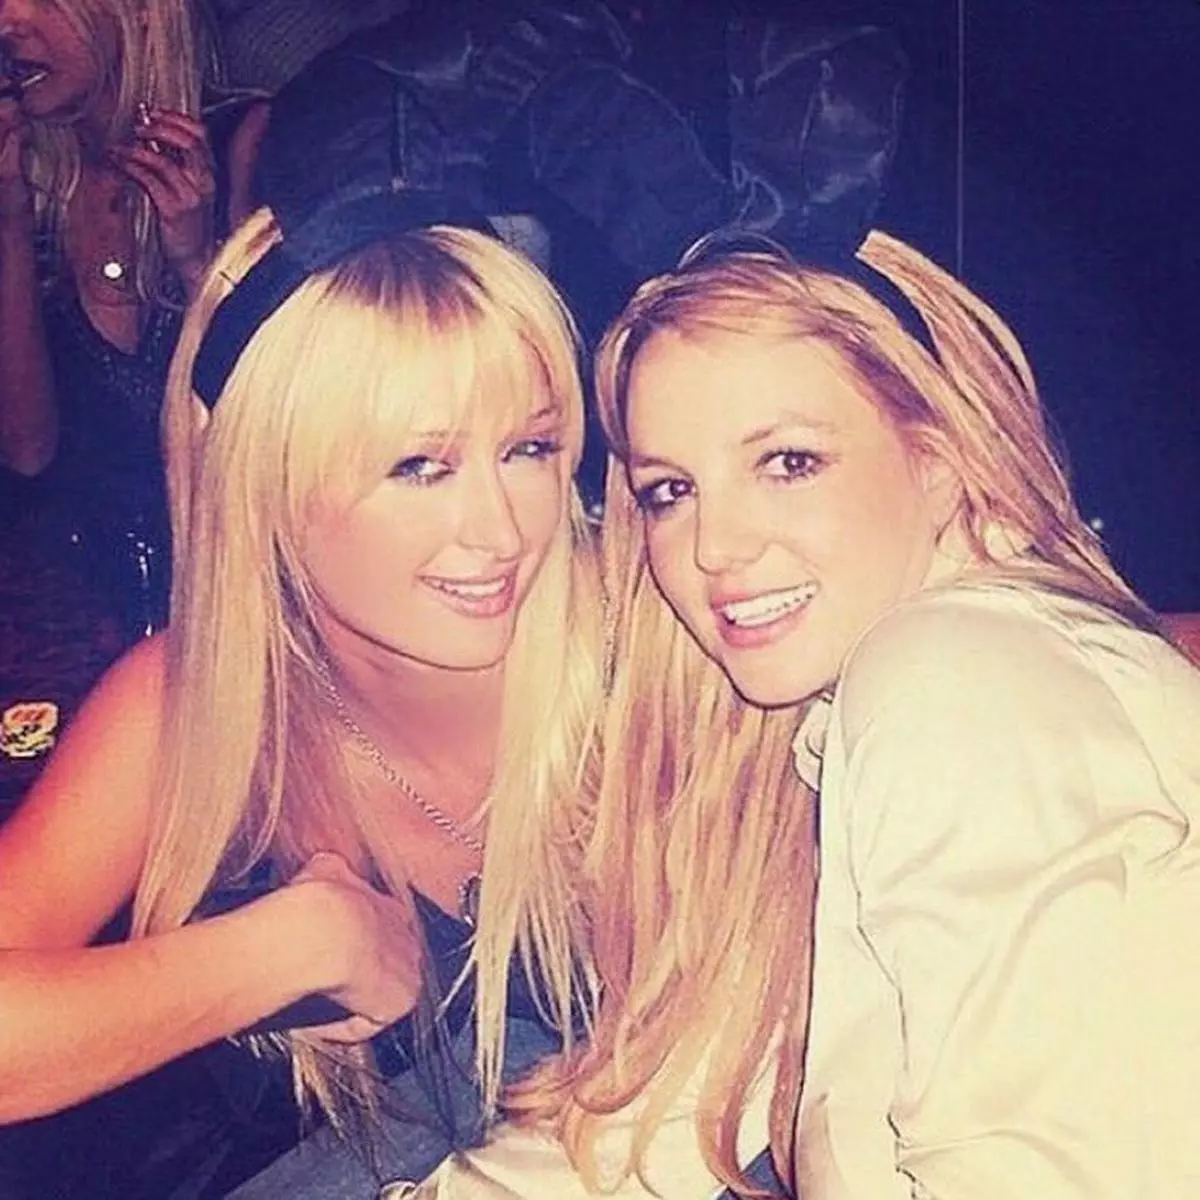 Siaradodd Paris Hilton am y sgandal o amgylch gwarcheidiaeth Spears Britney: 